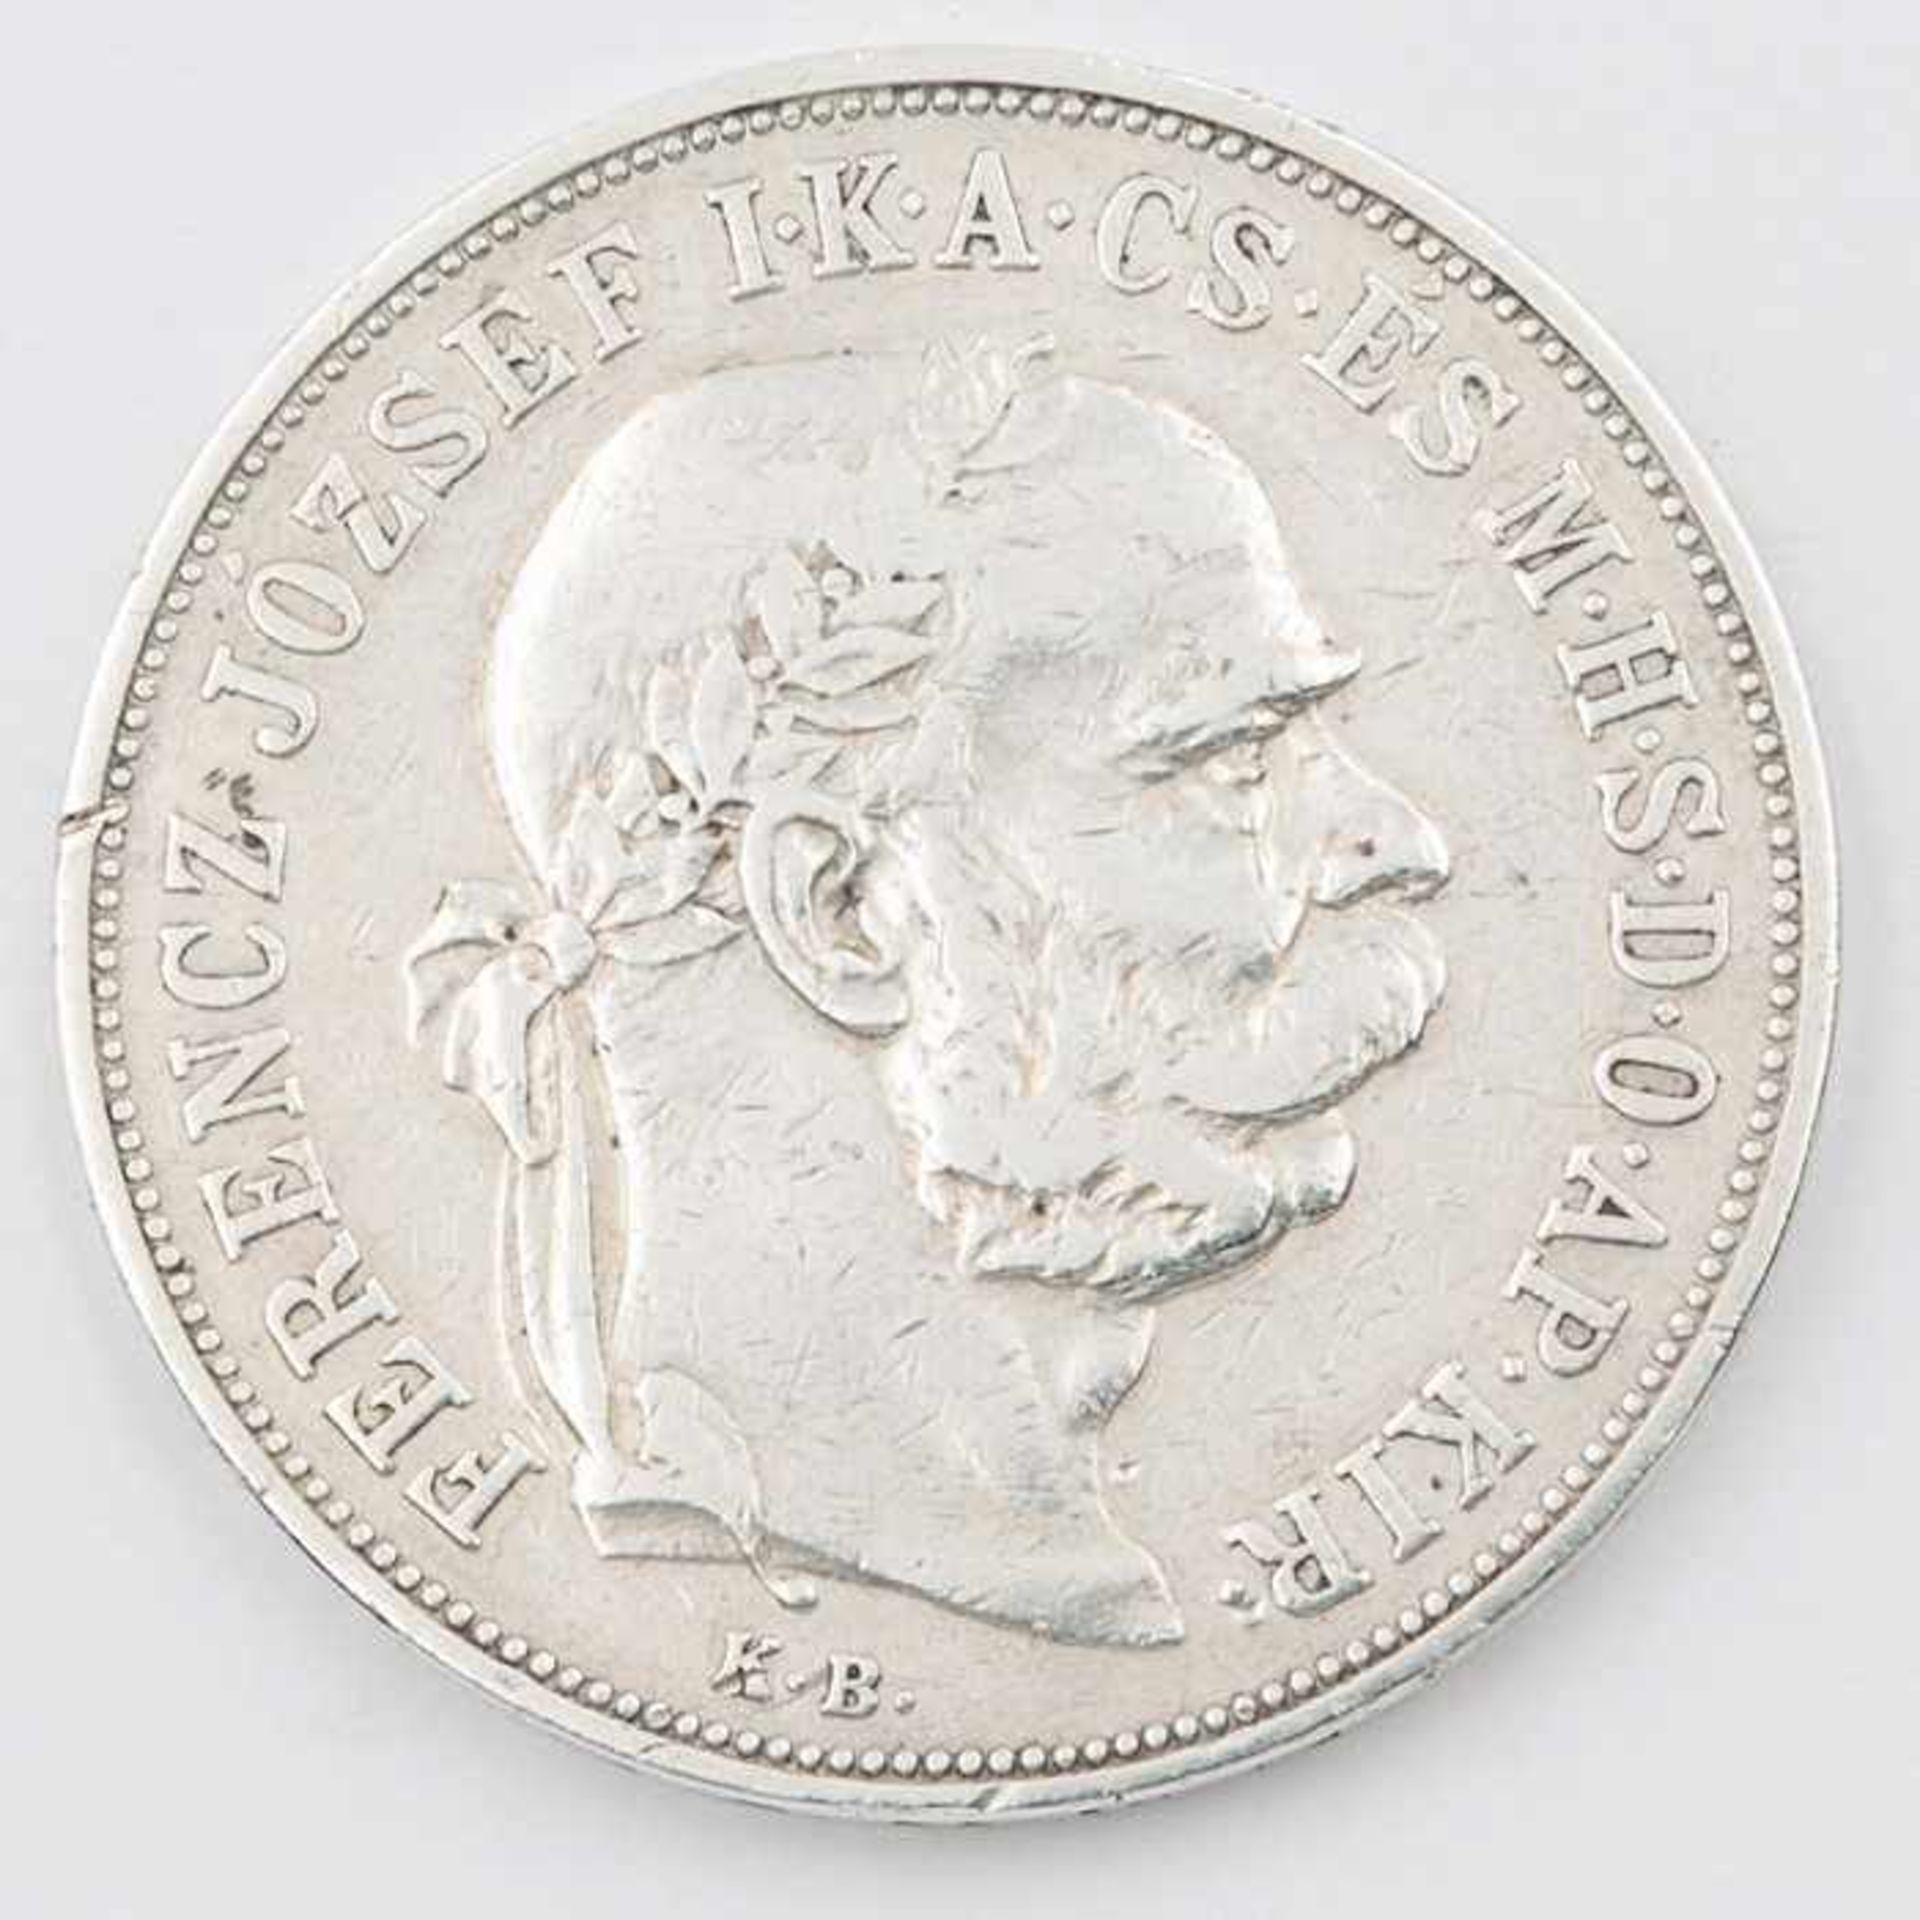 Münze - Österreich-UngarnSi, 5 Kronen, 1900, av. Franz Joseph I., G ca. 23, D ca. 3,5cm, ss- - -20.